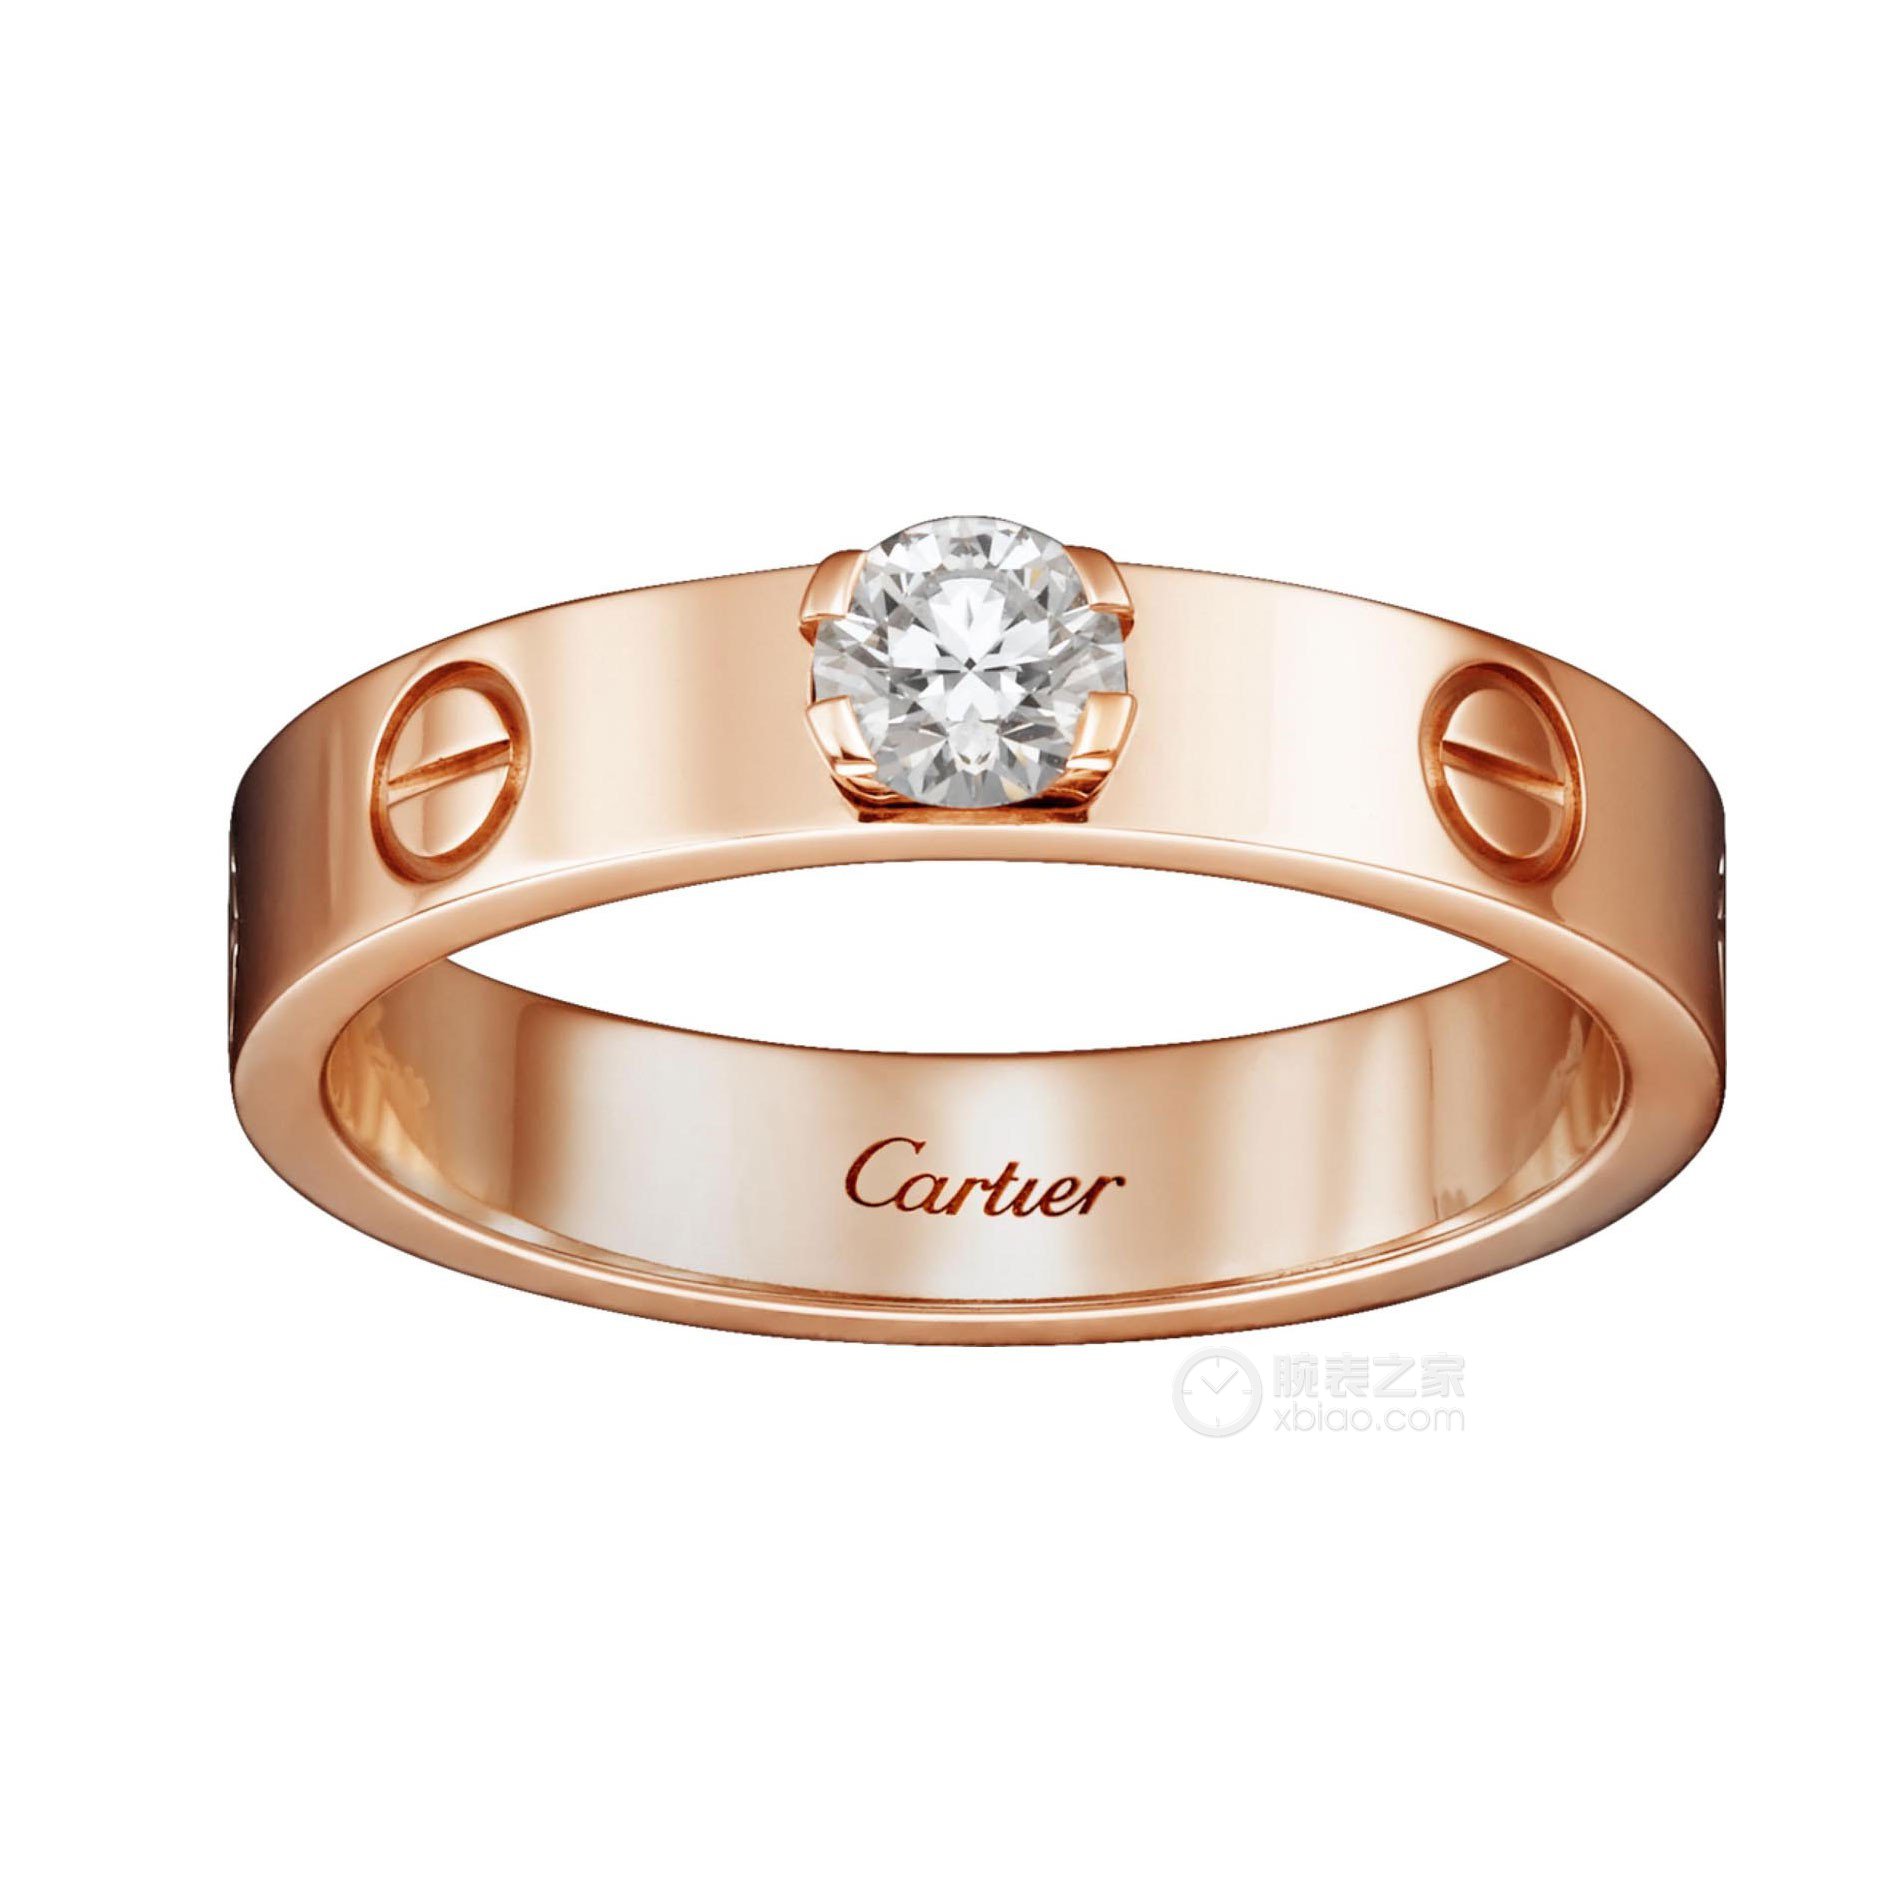 高清图|卡地亚LOVE系列B4097900戒指图片1|腕表之家-珠宝